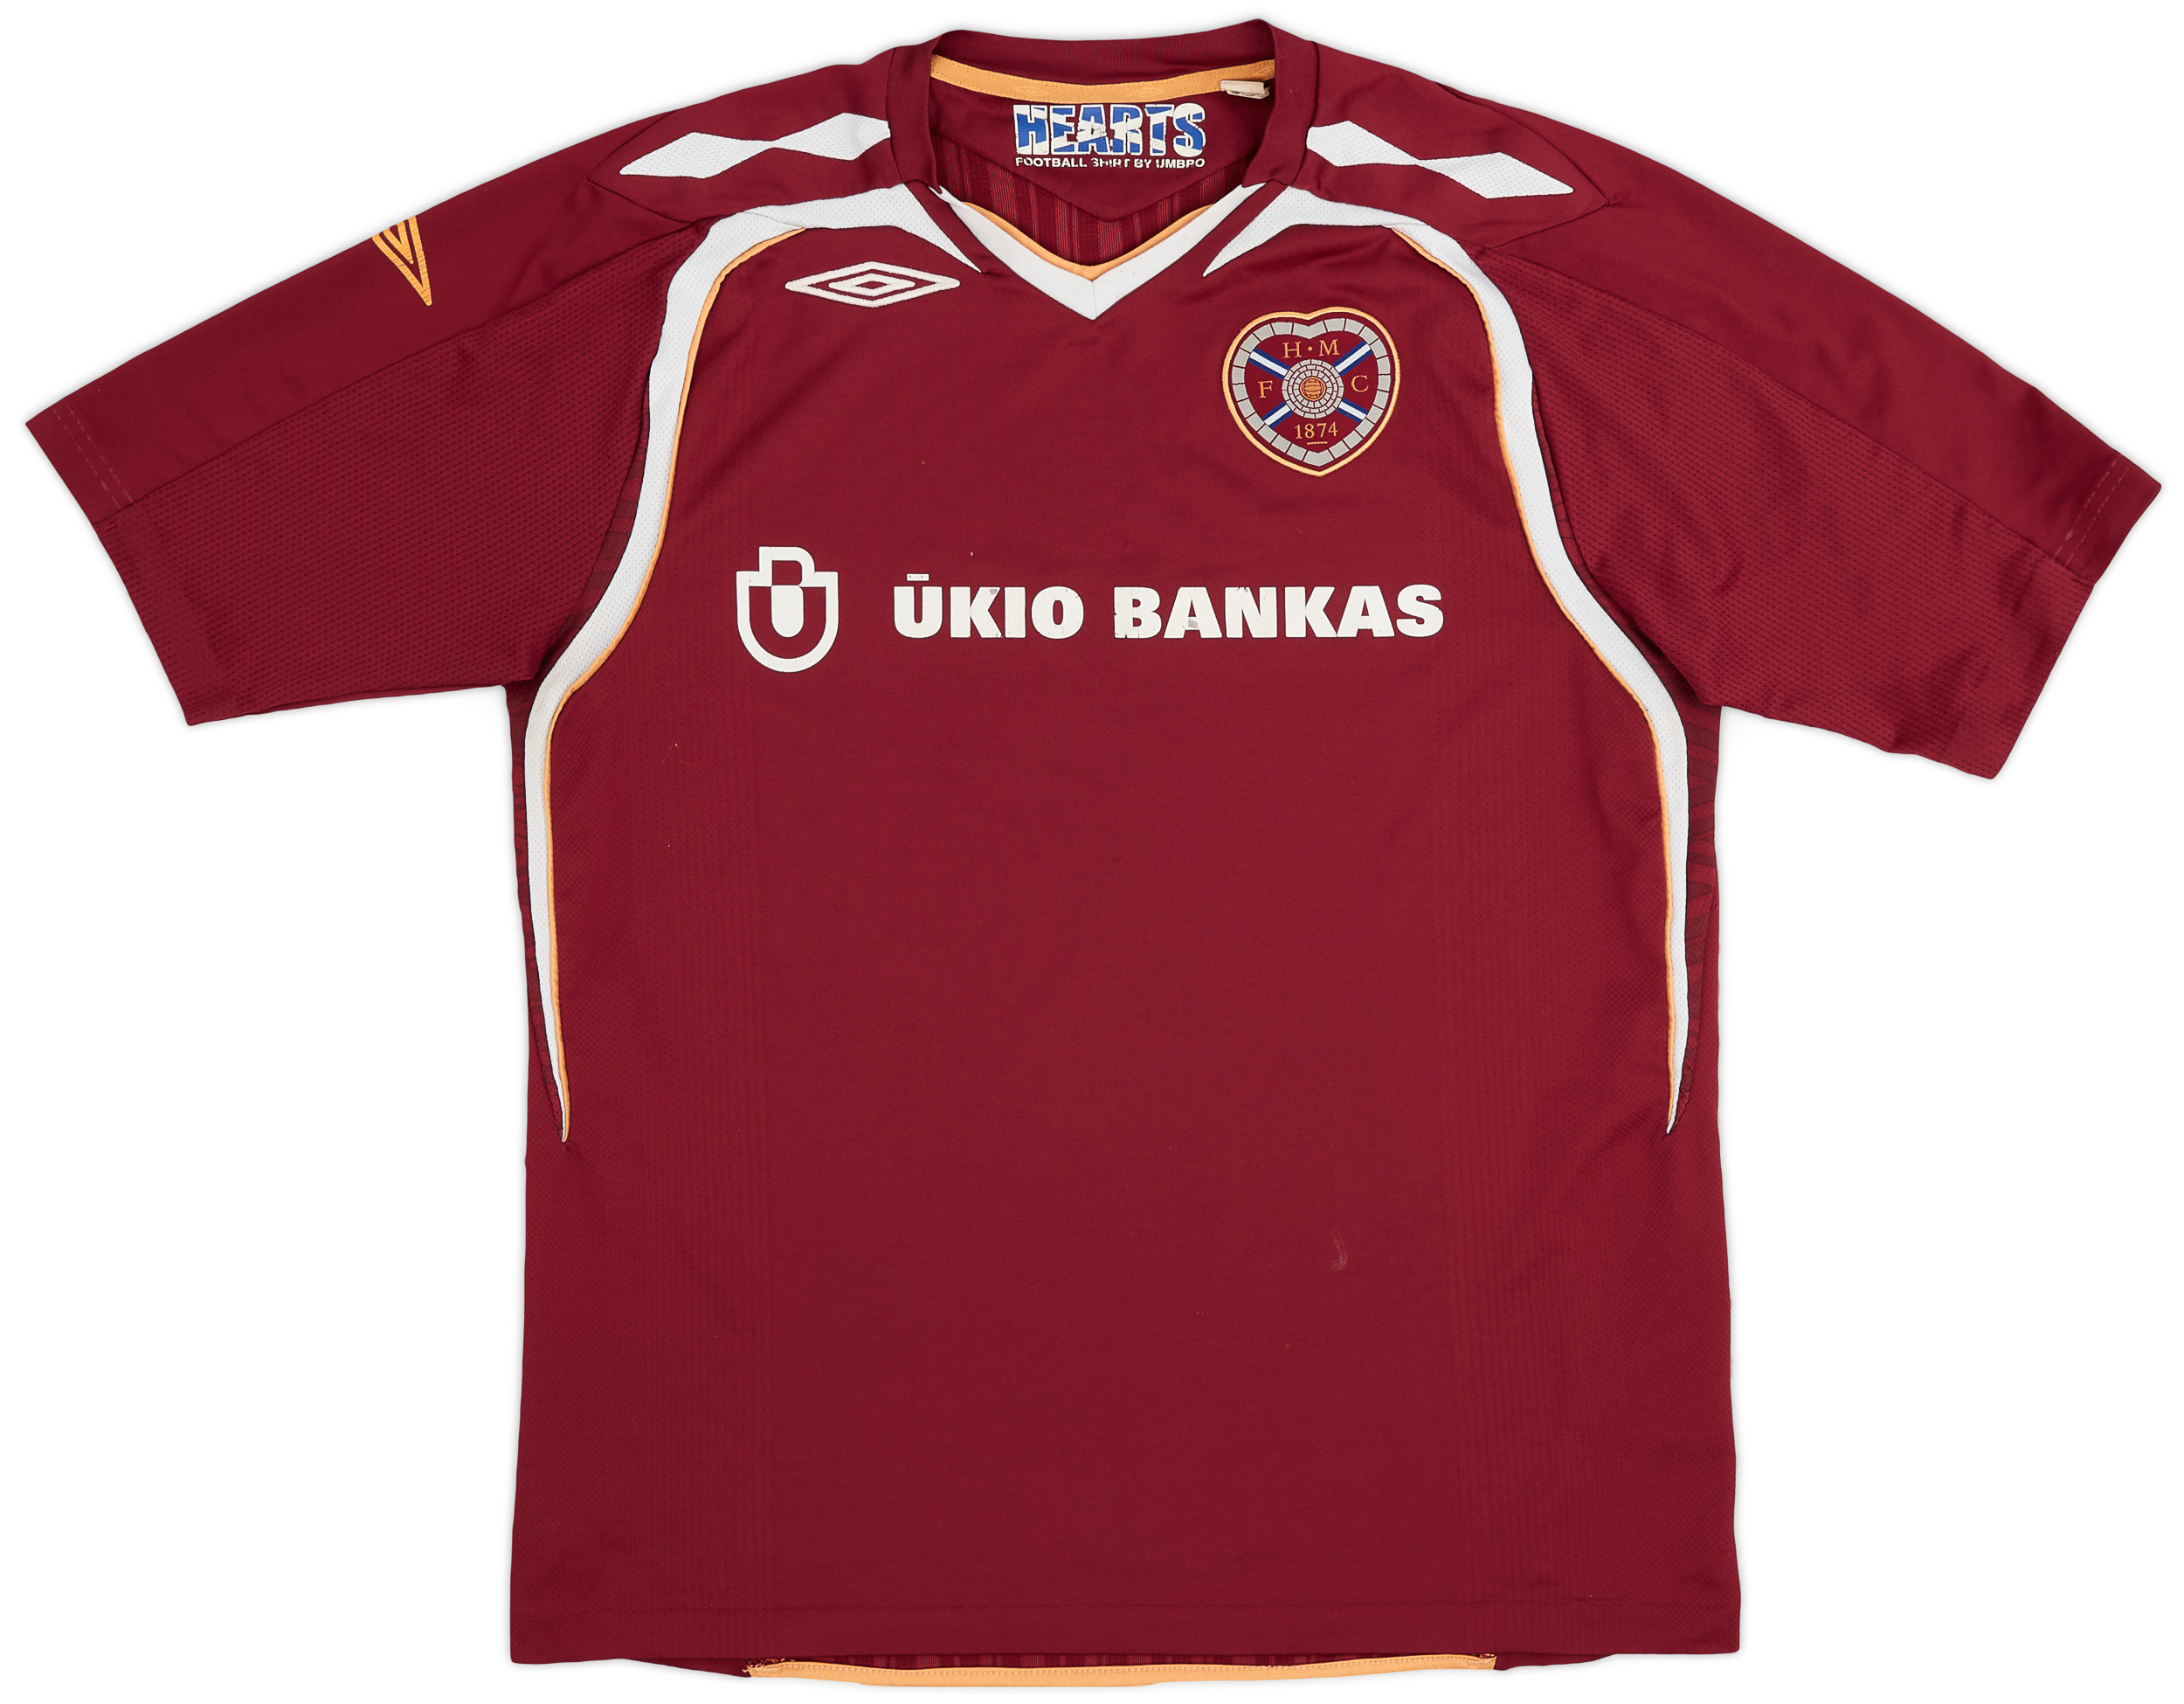 2007-08 Heart Of Midlothian (Hearts) Home Shirt - 6/10 - ()